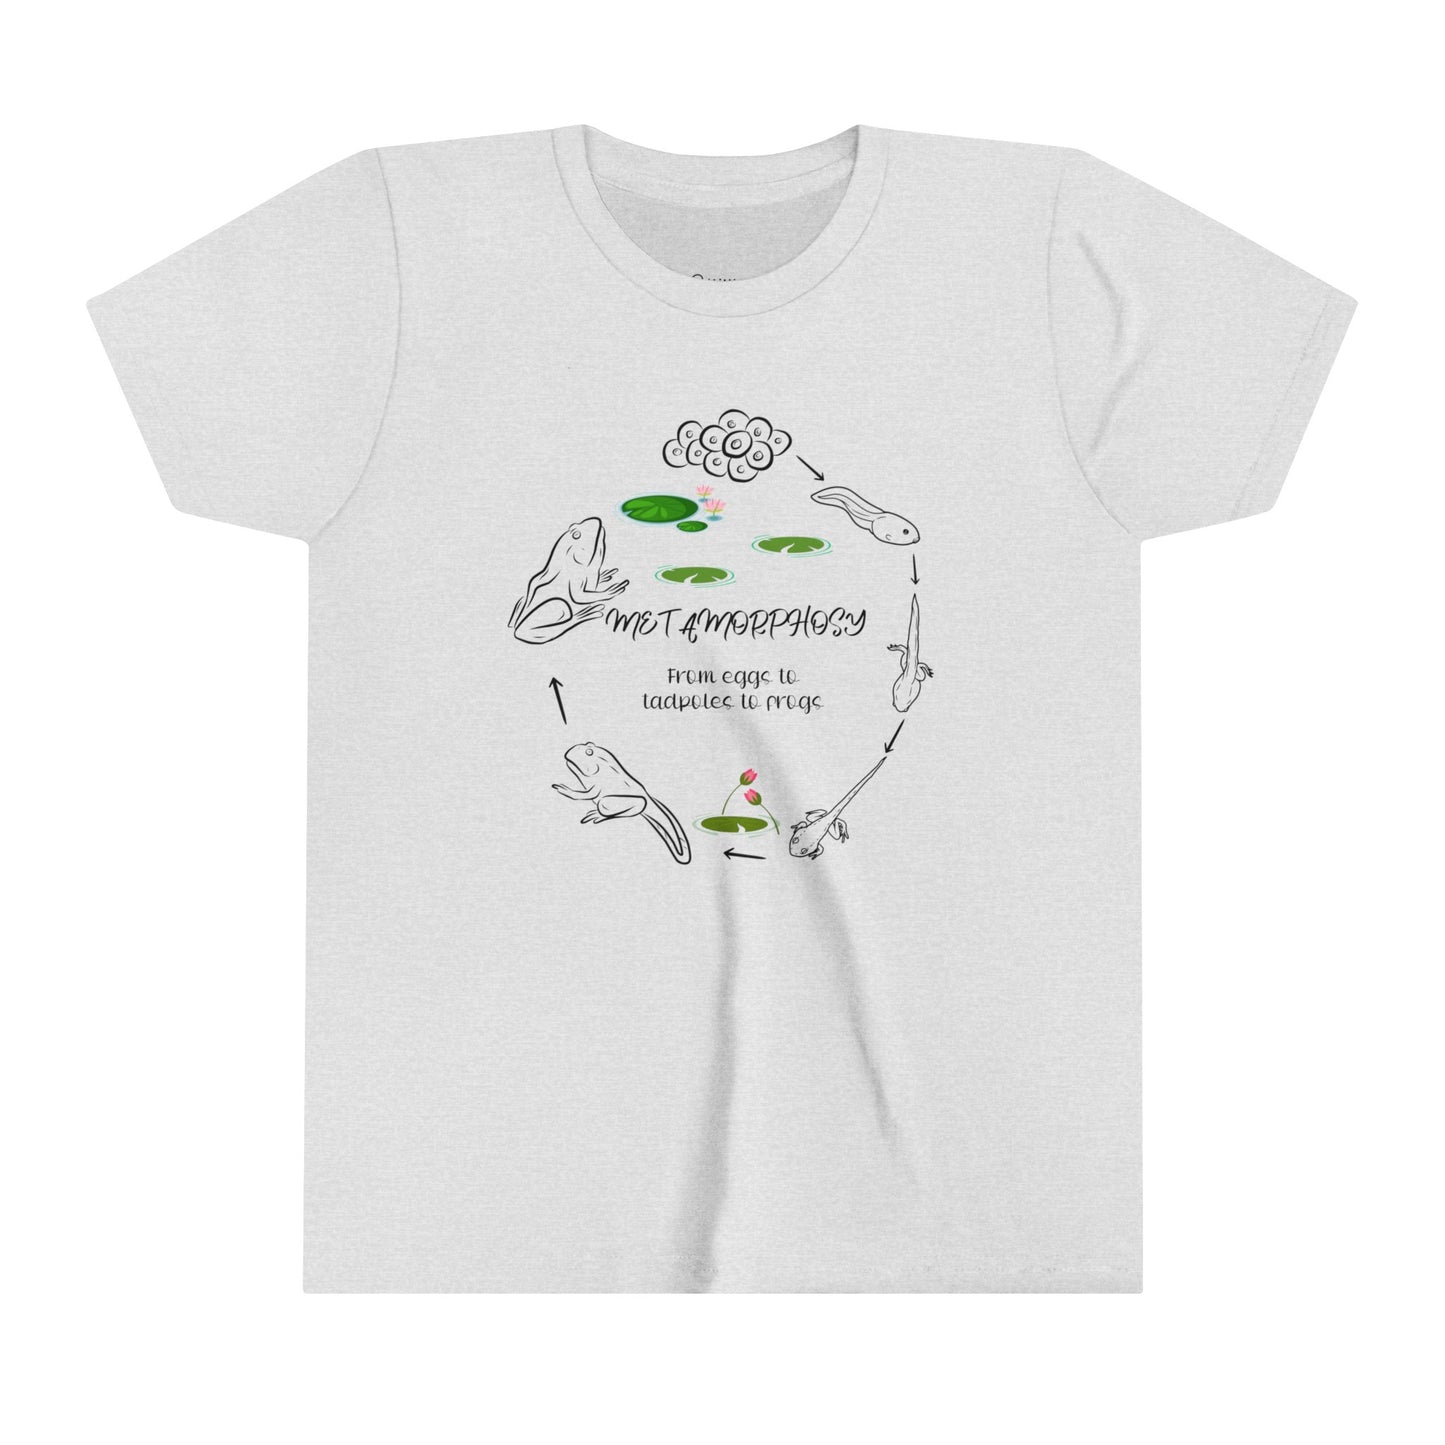 Camiseta de Rana en Metamorfosis de Comfort Colors, Diseño Único de Transformación de Rana, Camiseta Comfort Colors para Amantes de los Animales